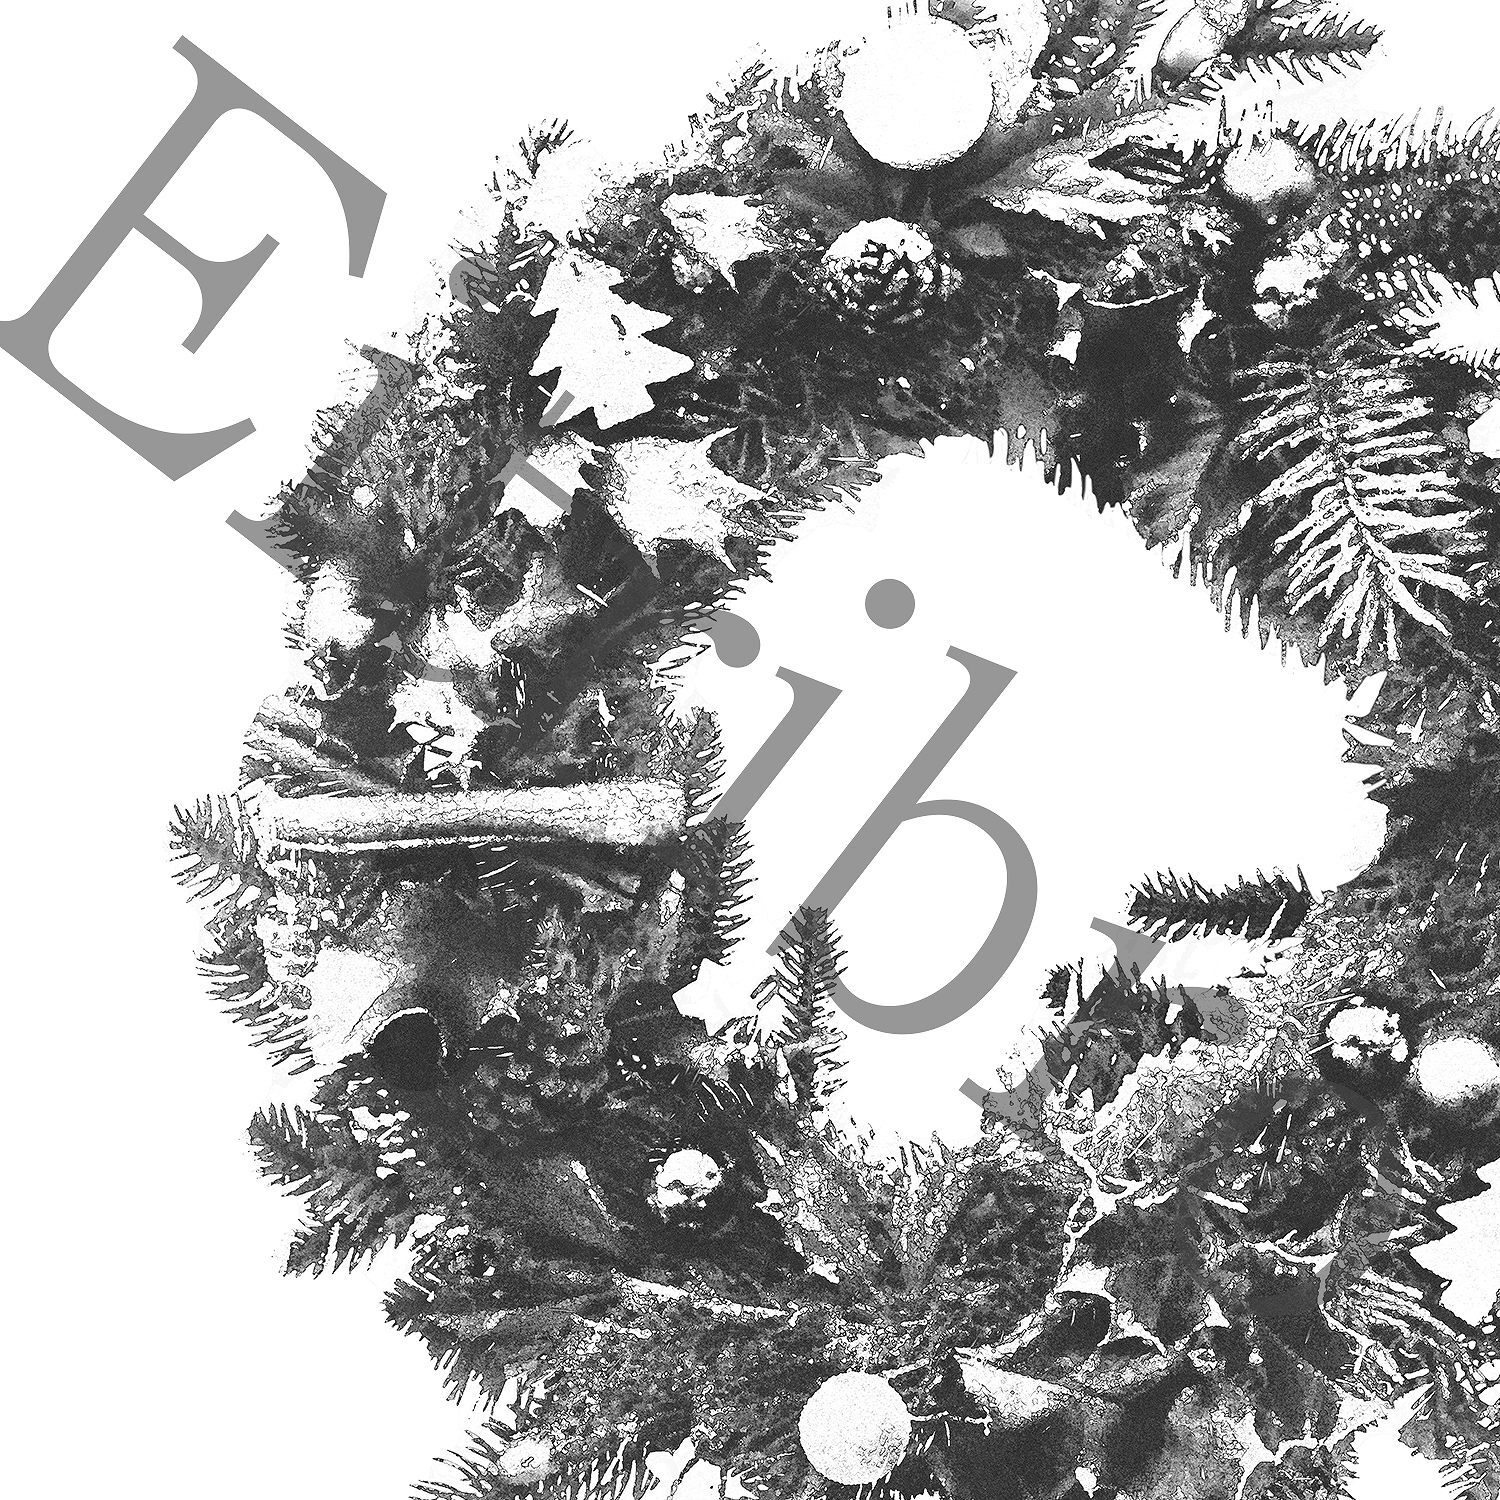 アートポスター Christmas Wreath Eb061 Eitribro エイトリブロ Online Shop 北欧インテリアのポスター通販専門店